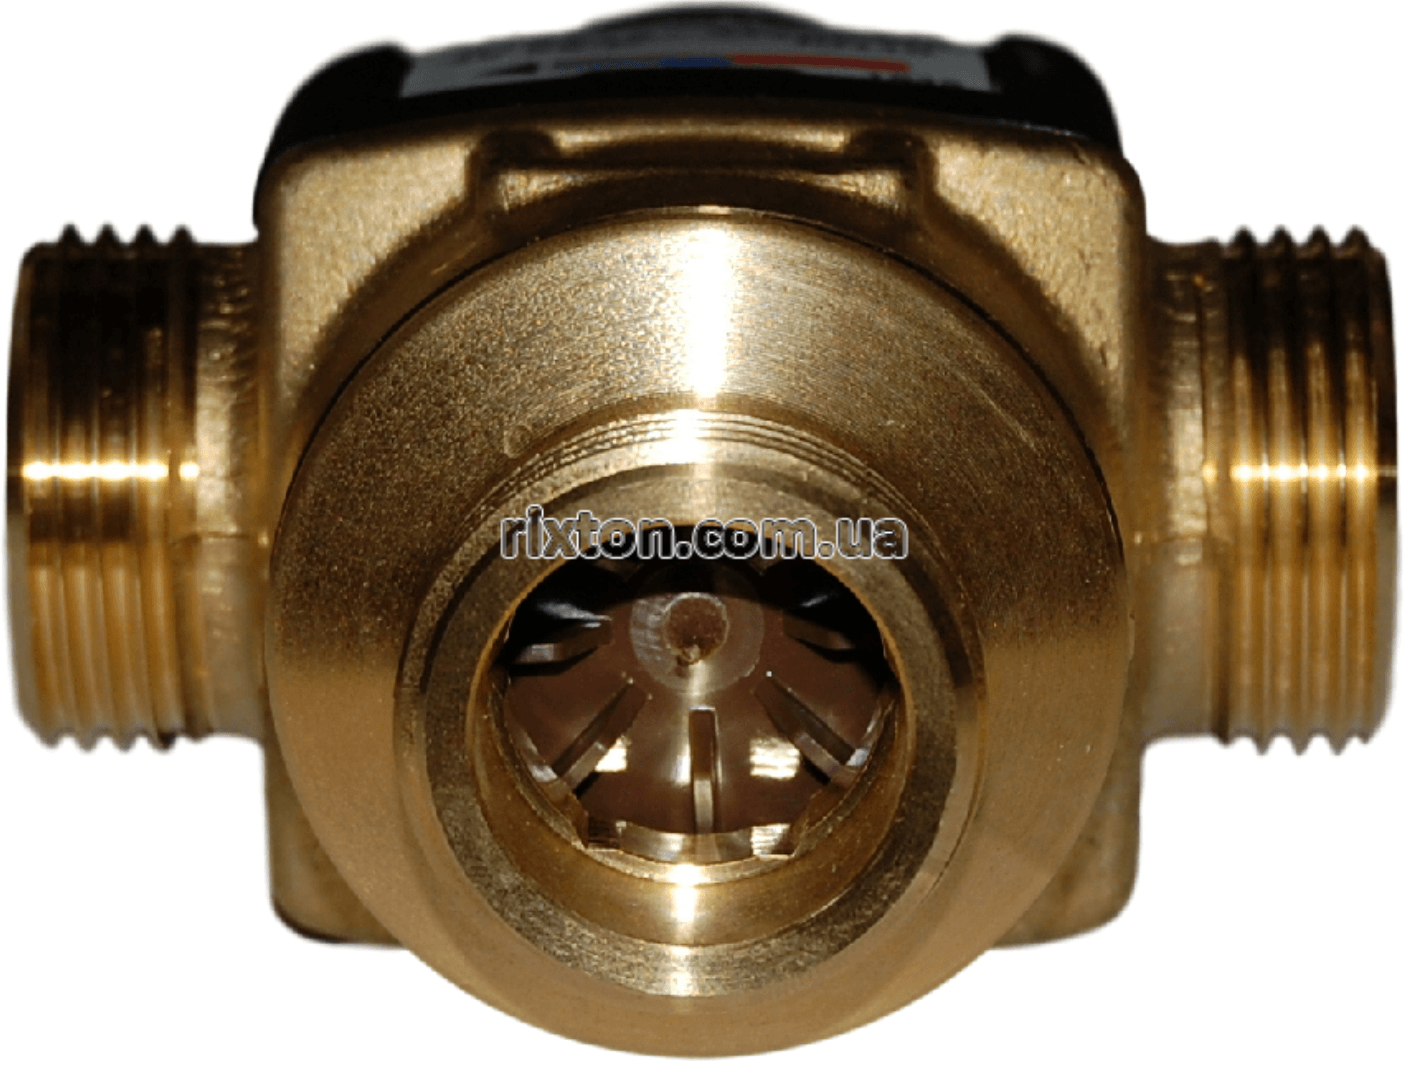 Трехходовой смесительный клапан Esbe VTA 572 45-65°C DN20 1